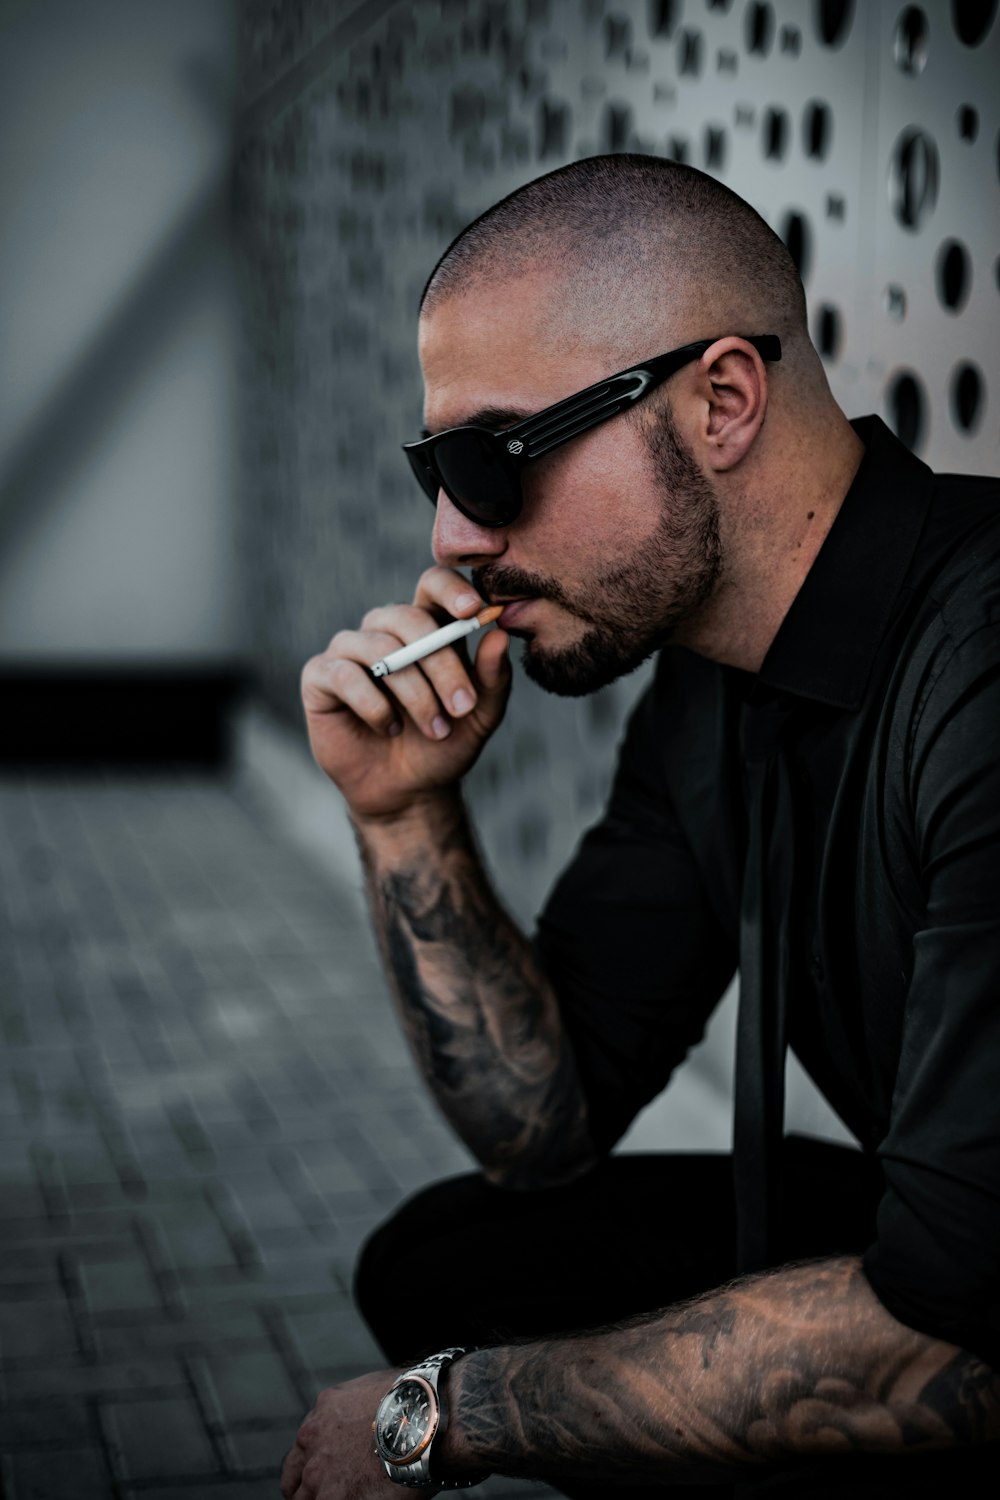 man in black dress shirt smoking cigarette